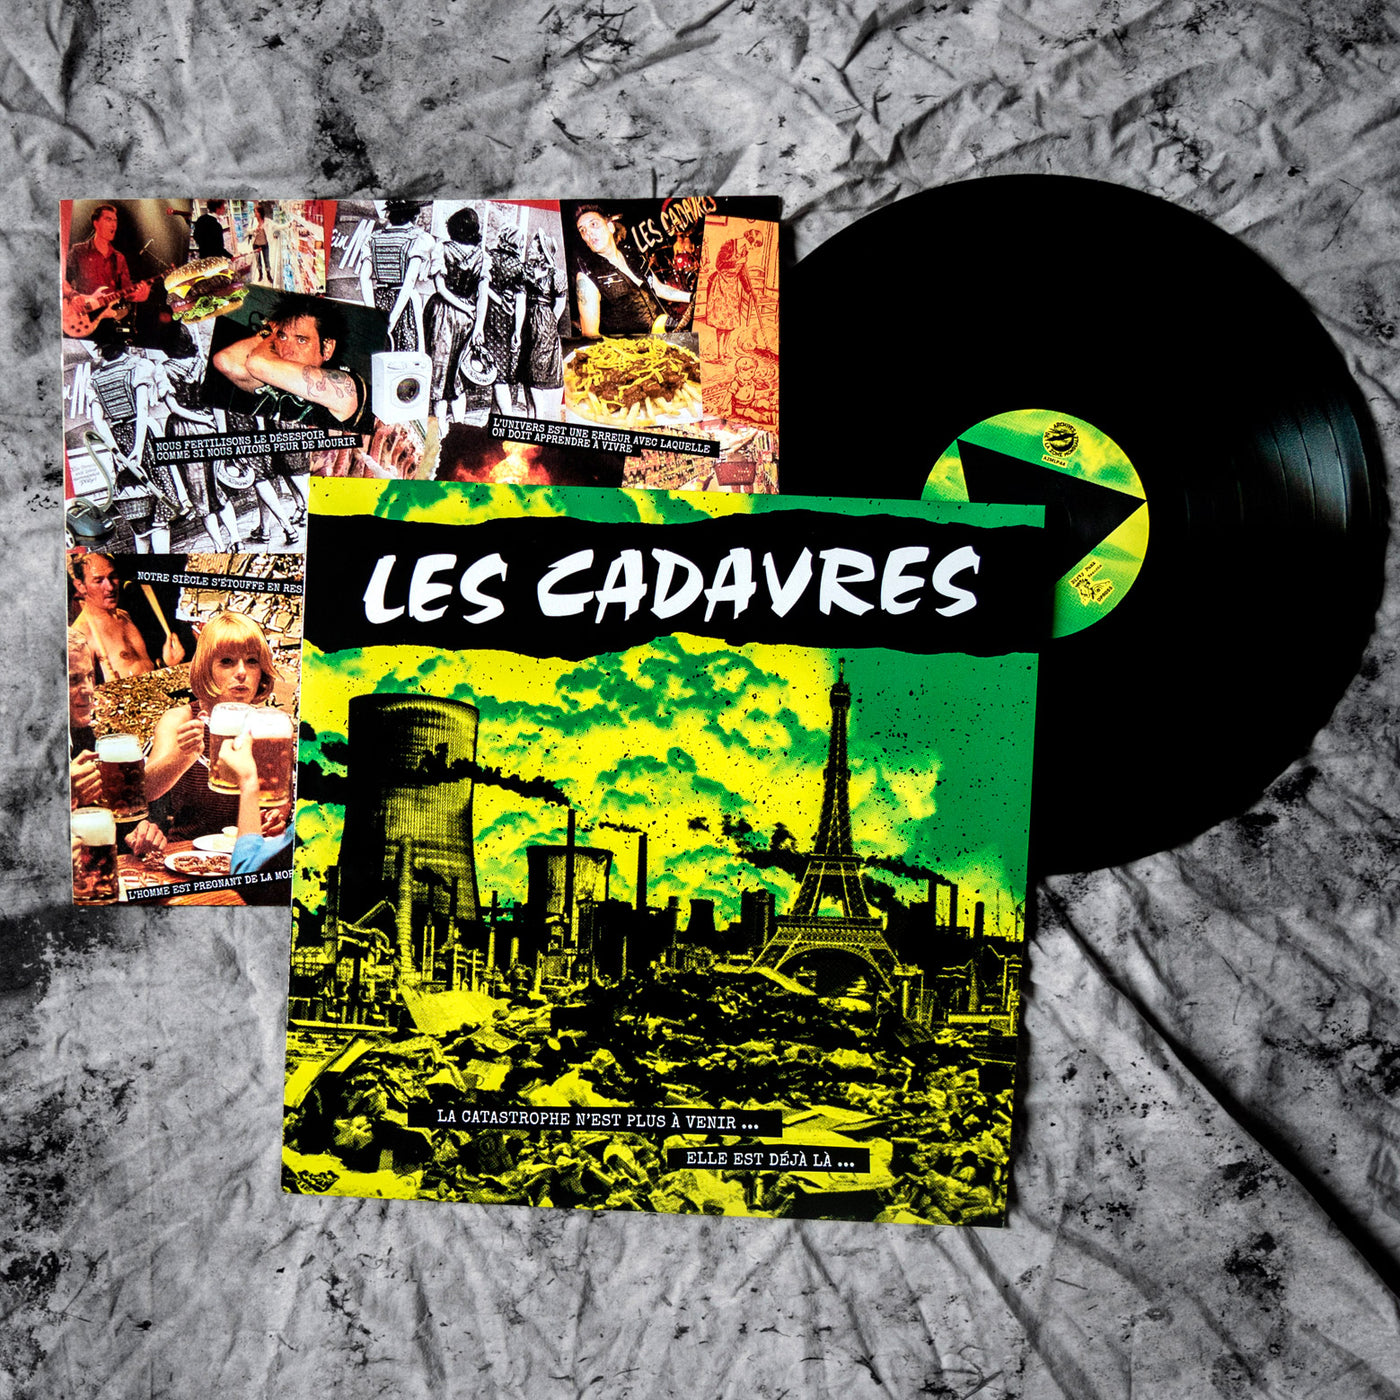 disque vinyle de l'album live "La Catastrophe n'est plus à venir..." du groupe punk LES CADAVRES. sous-pochette imprimée avec paroles et photos